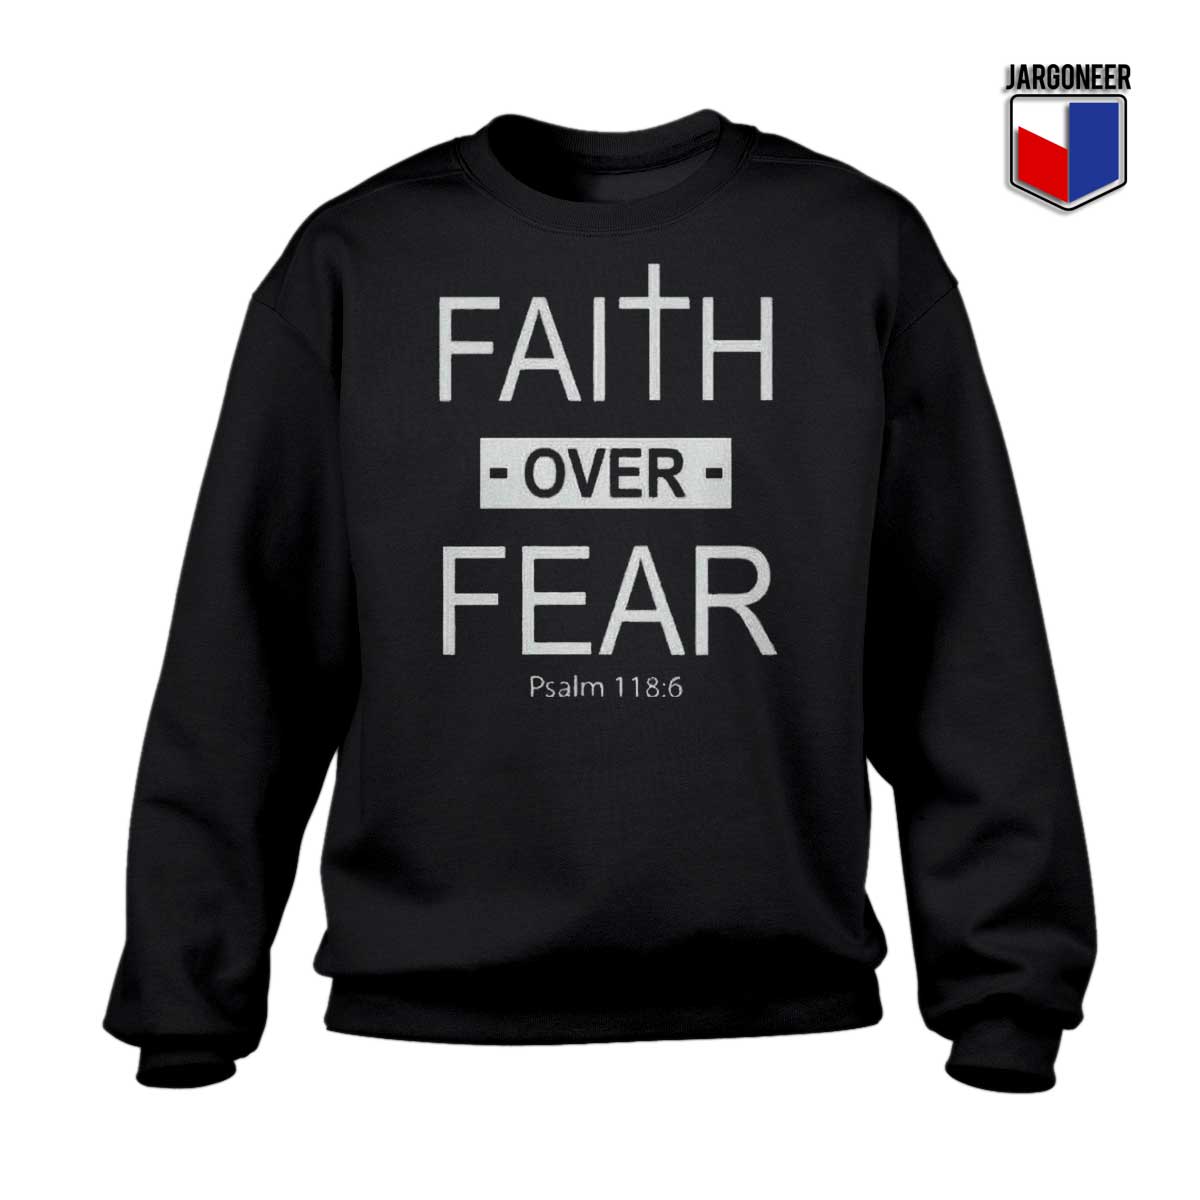 Faith Over Fear Black Sweatshirt - Shop Unique Graphic Cool Shirt Designs